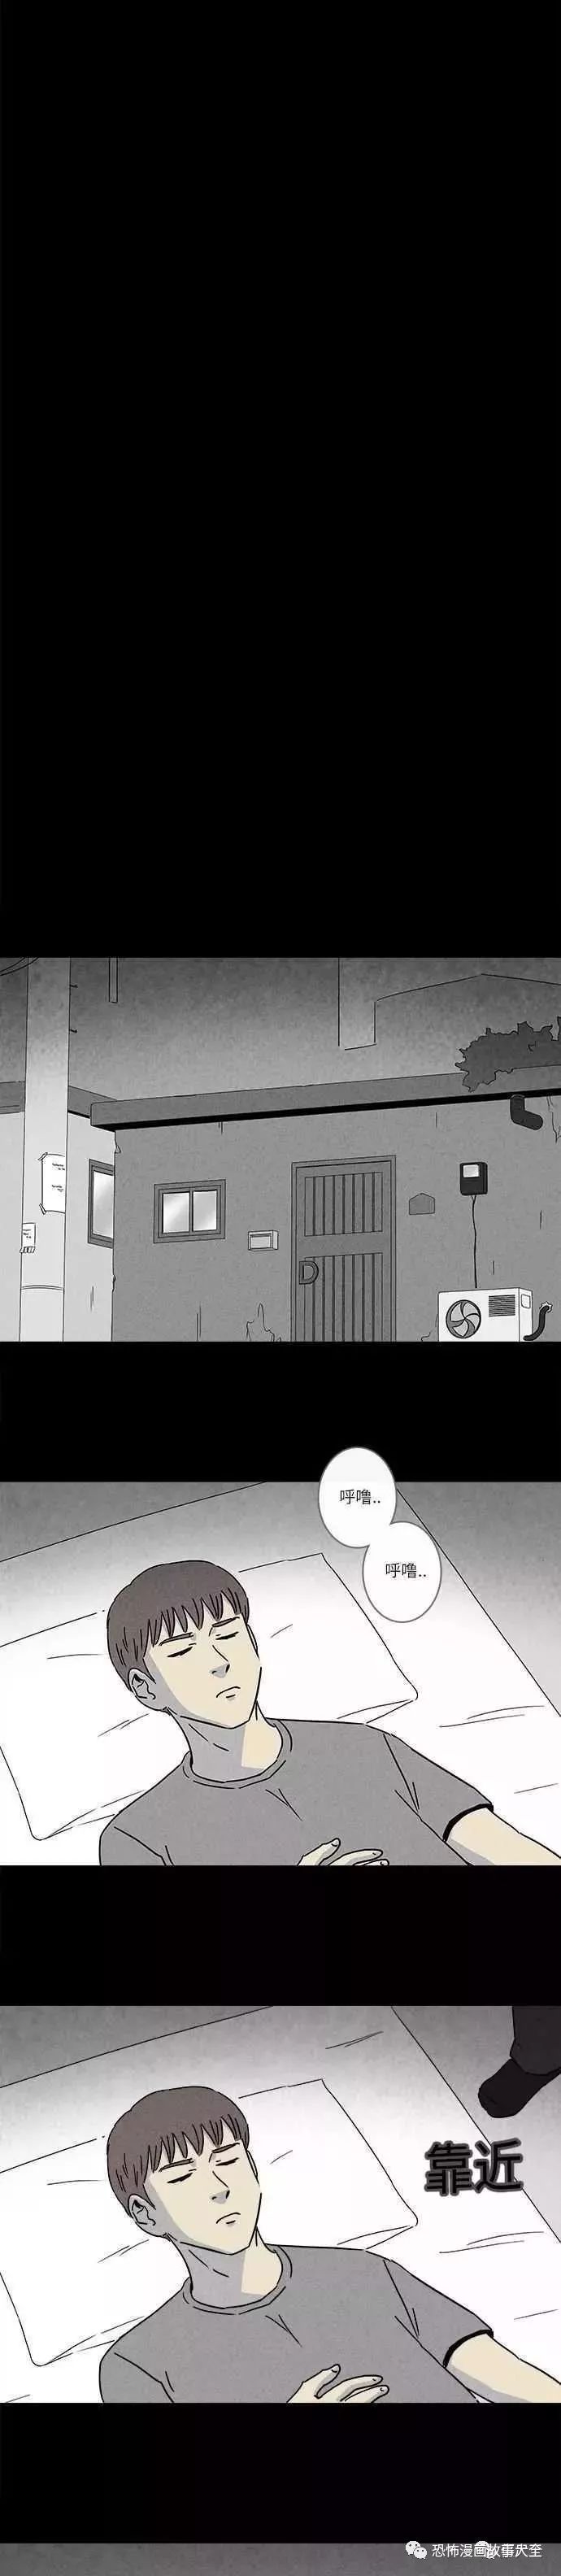 恐怖漫畫：少年與殺人犯 靈異 第44張